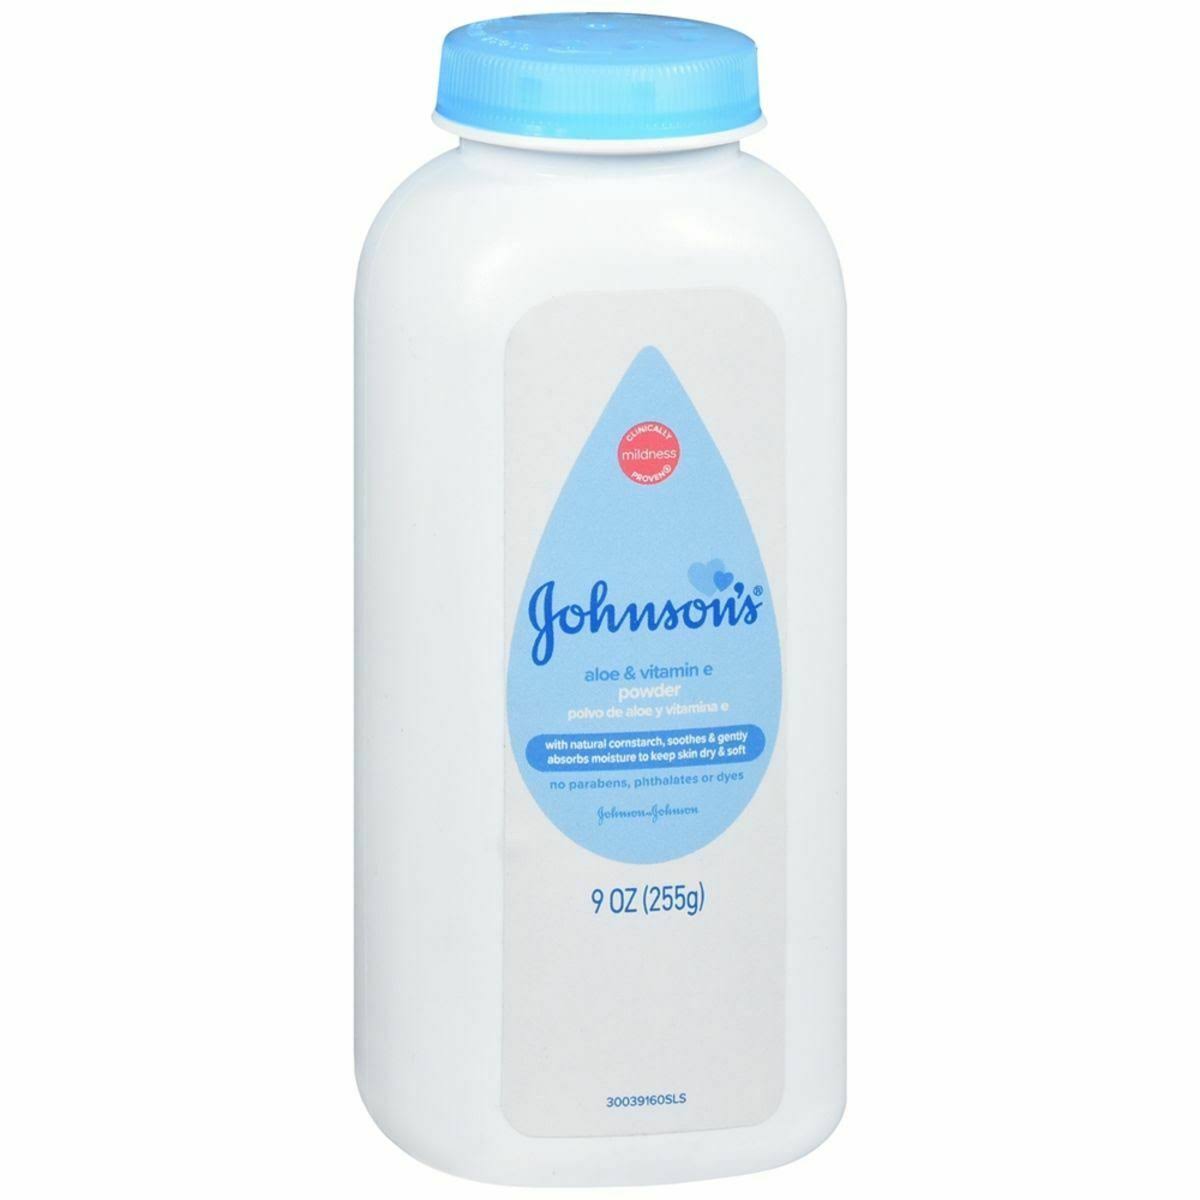 Johnson's Baby Powder - Pure Cornstarch With Aloe and Vitamin E, 9oz